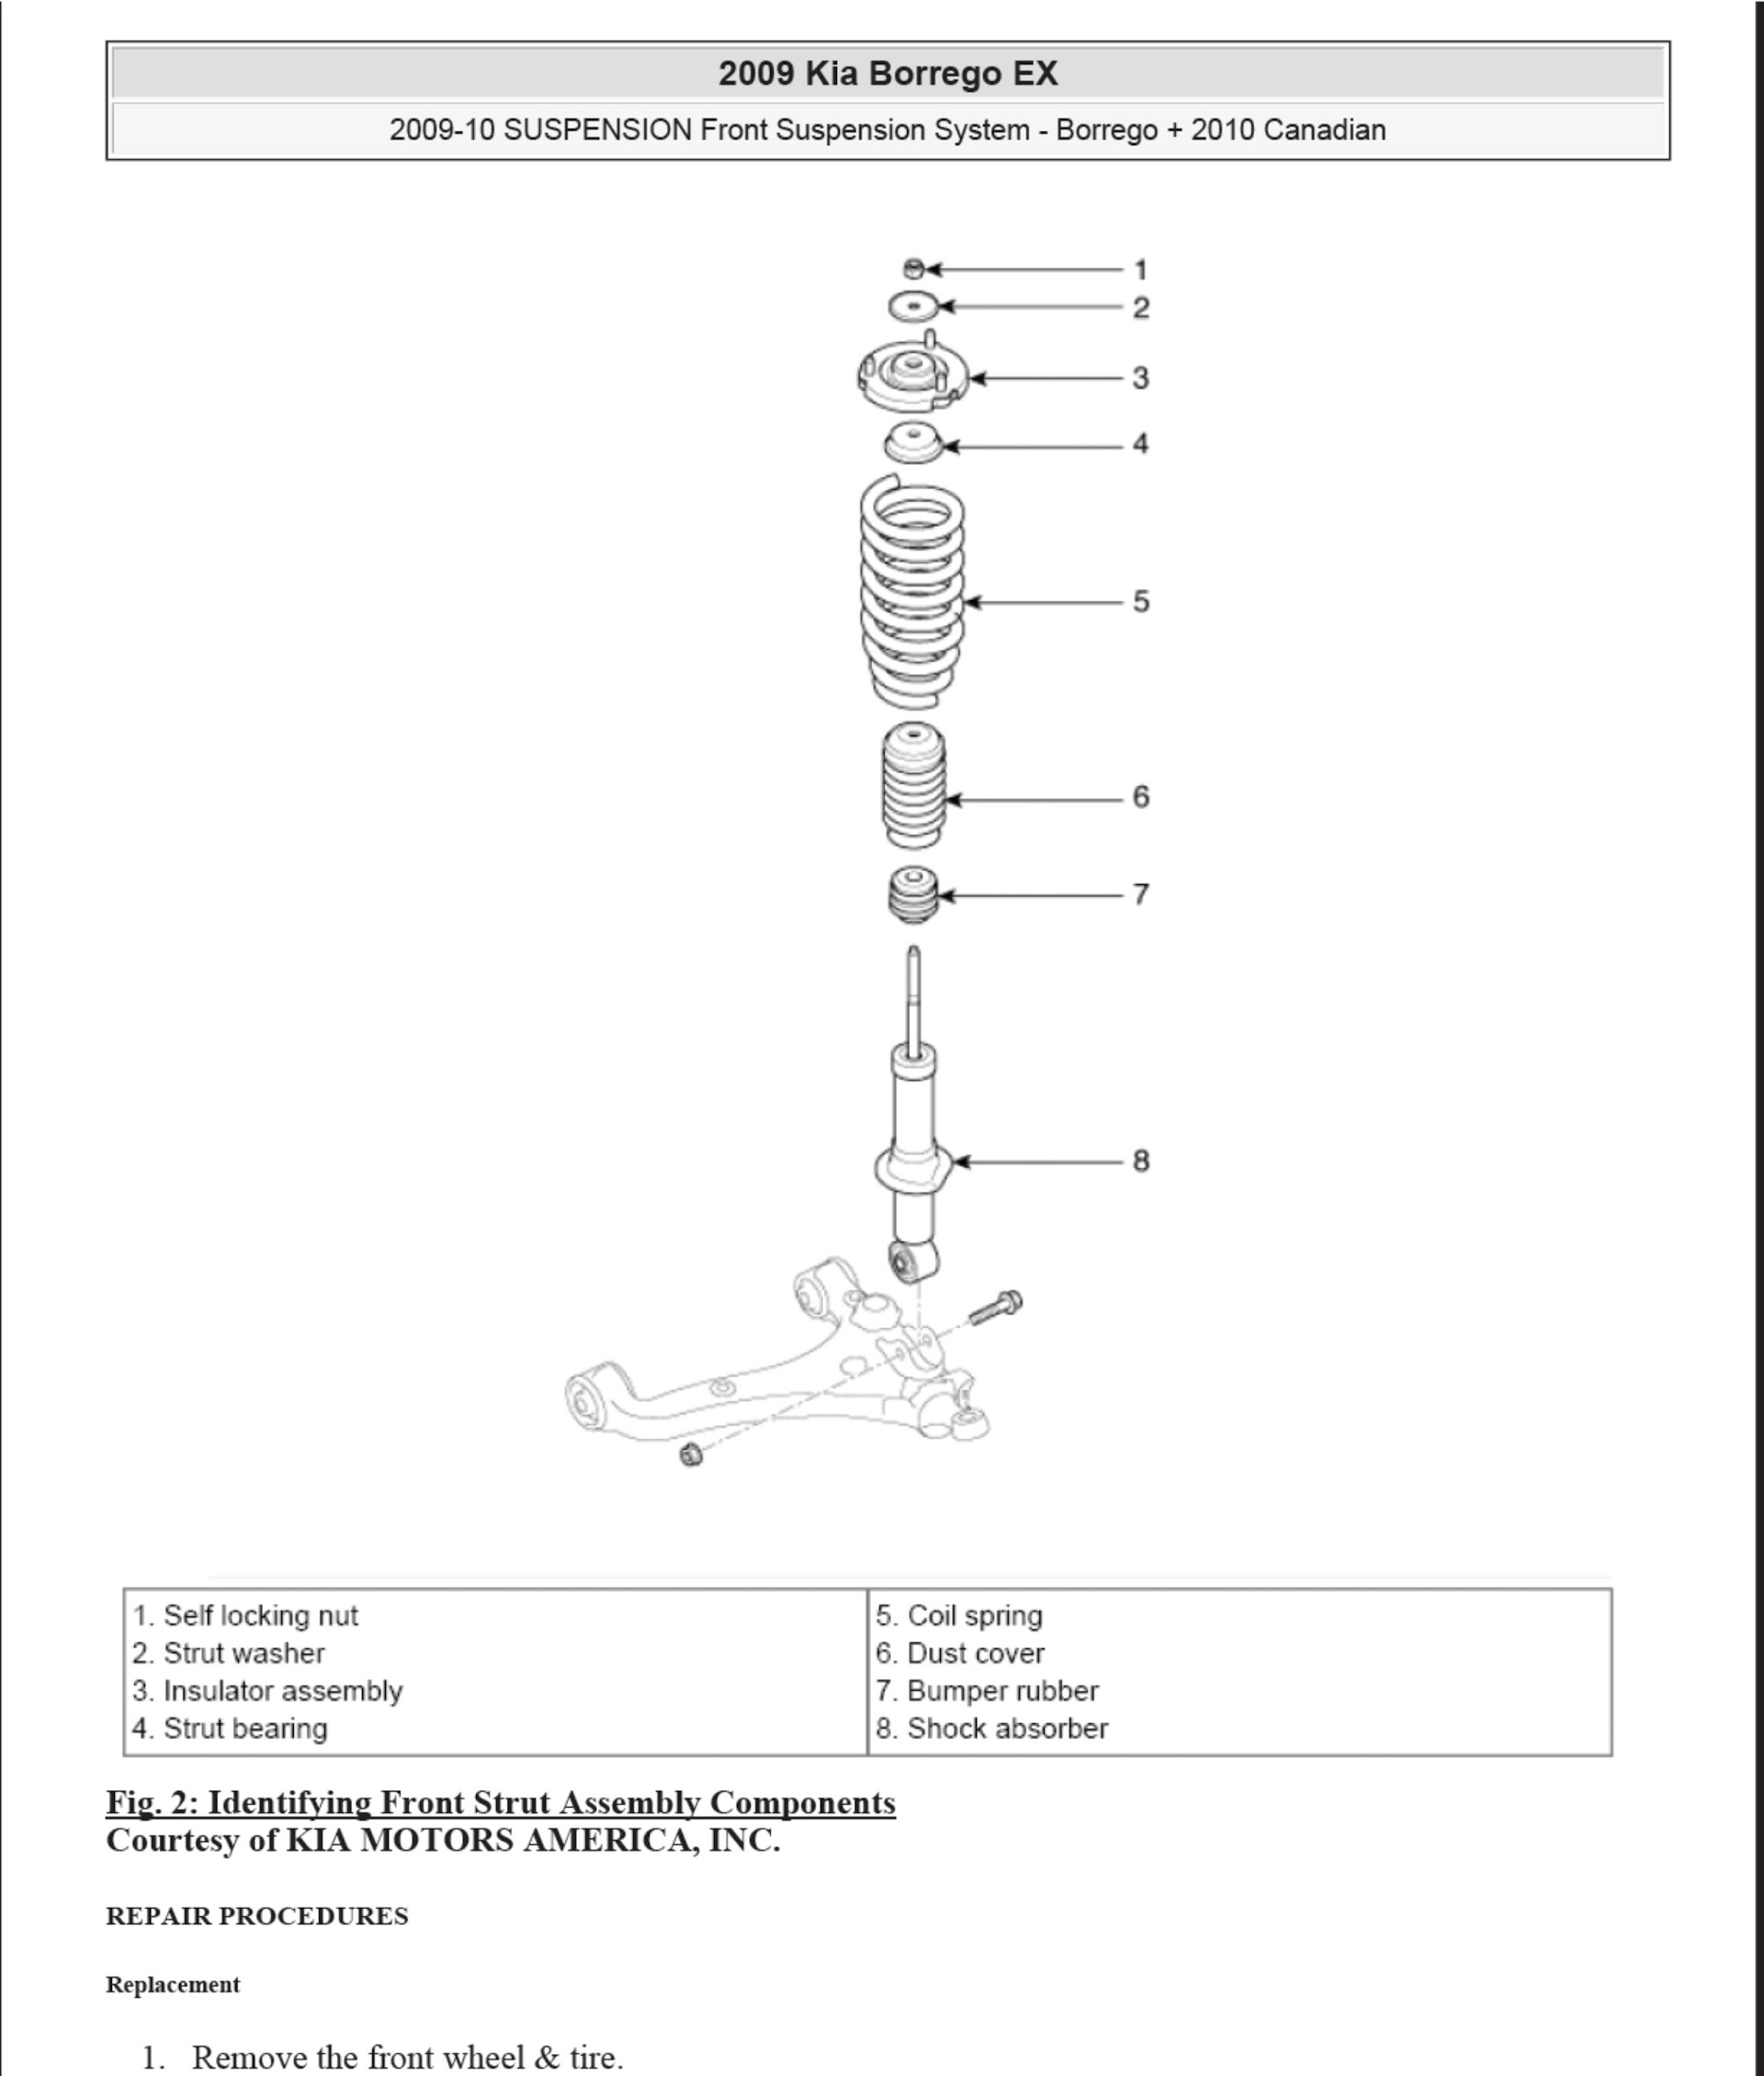 2008-2010 Kia Borrego repair manual, suspension system